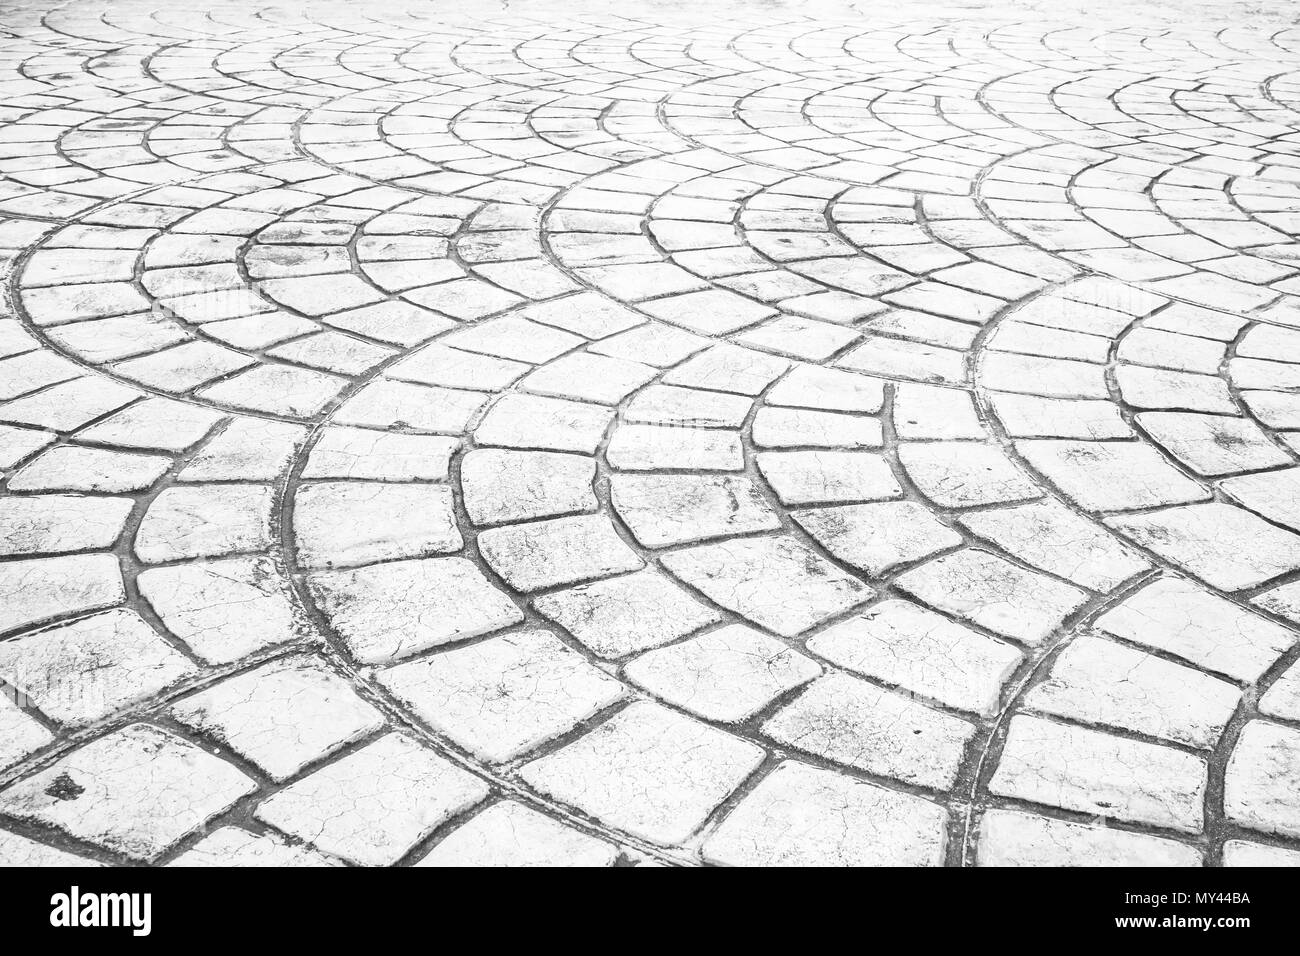 Close up Perspektive der Steinboden. Steinboden Textur. Granit Kopfsteinpflaster Hintergrund. Zusammenfassung Hintergrund eines gepflasterten pavemen Stockfoto